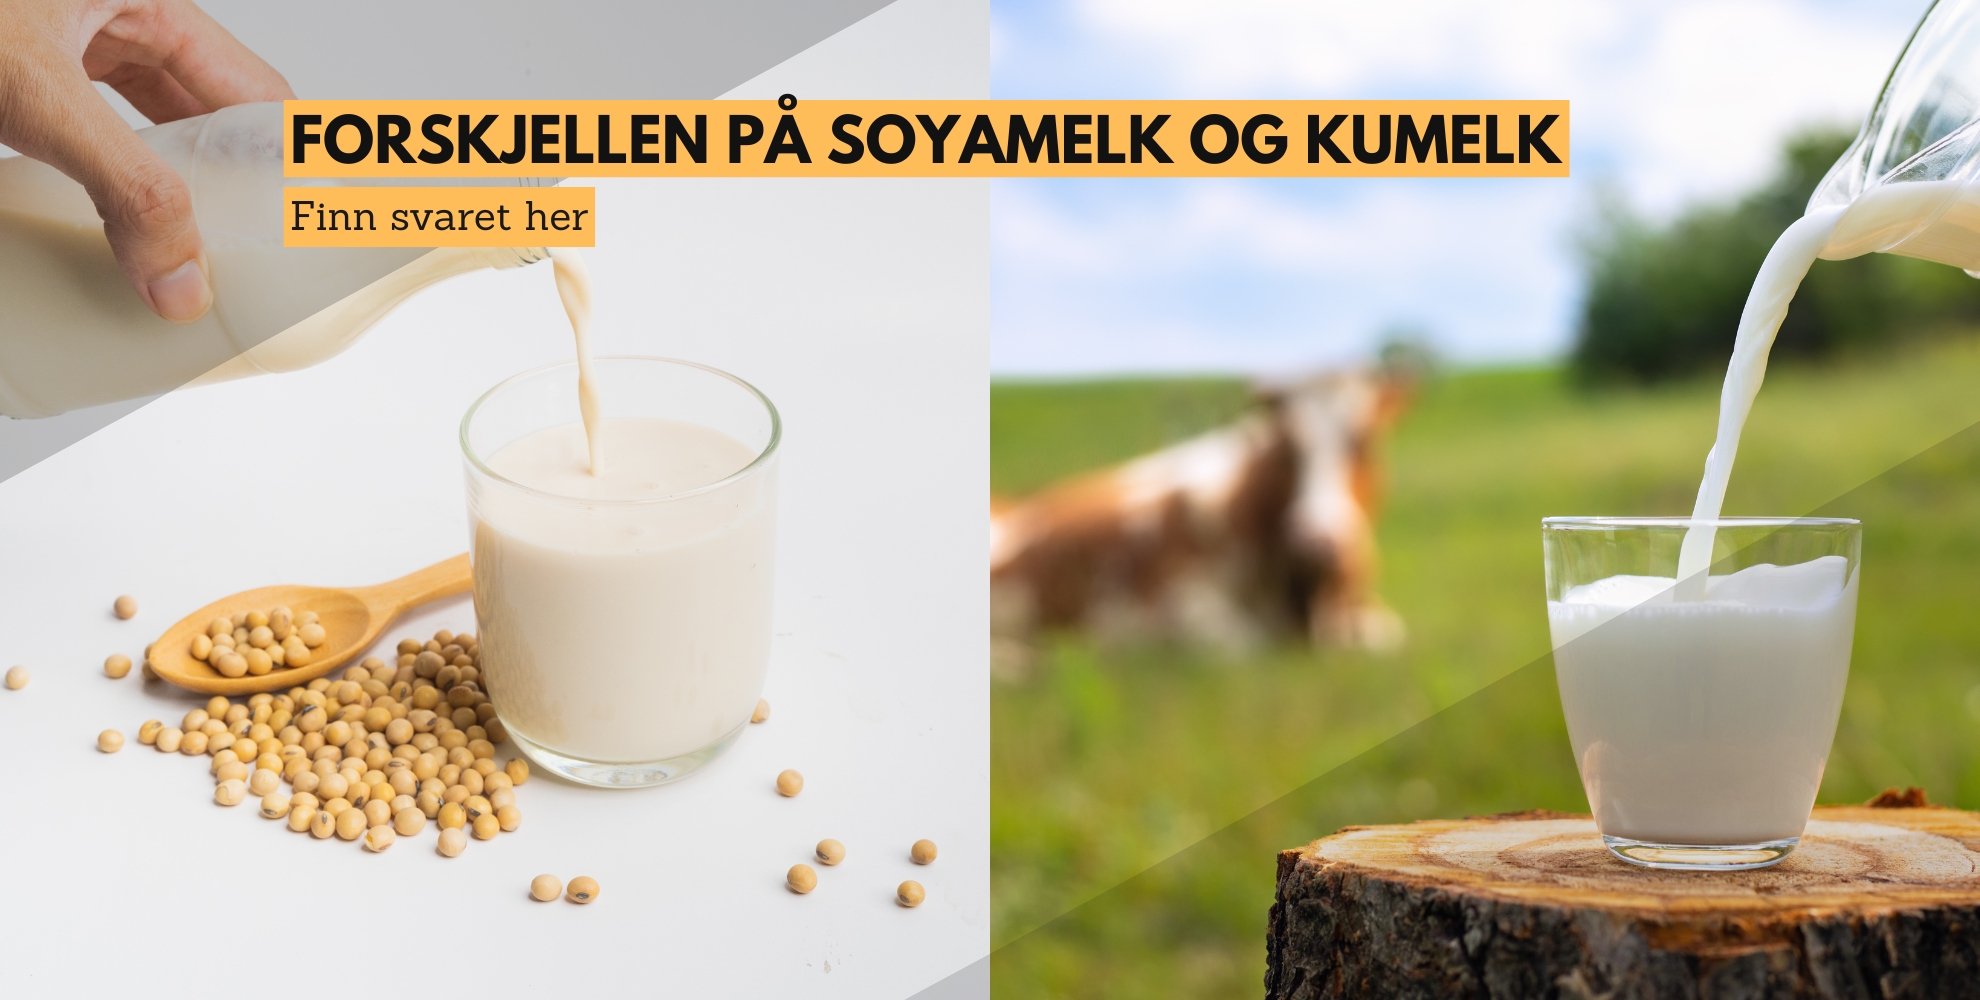 bilde av noen som helle soyamelk i en kopp og en som heller kumelk i en kopp, med tekst: forskjellen på soyamelk og kumelk, finn svaret her